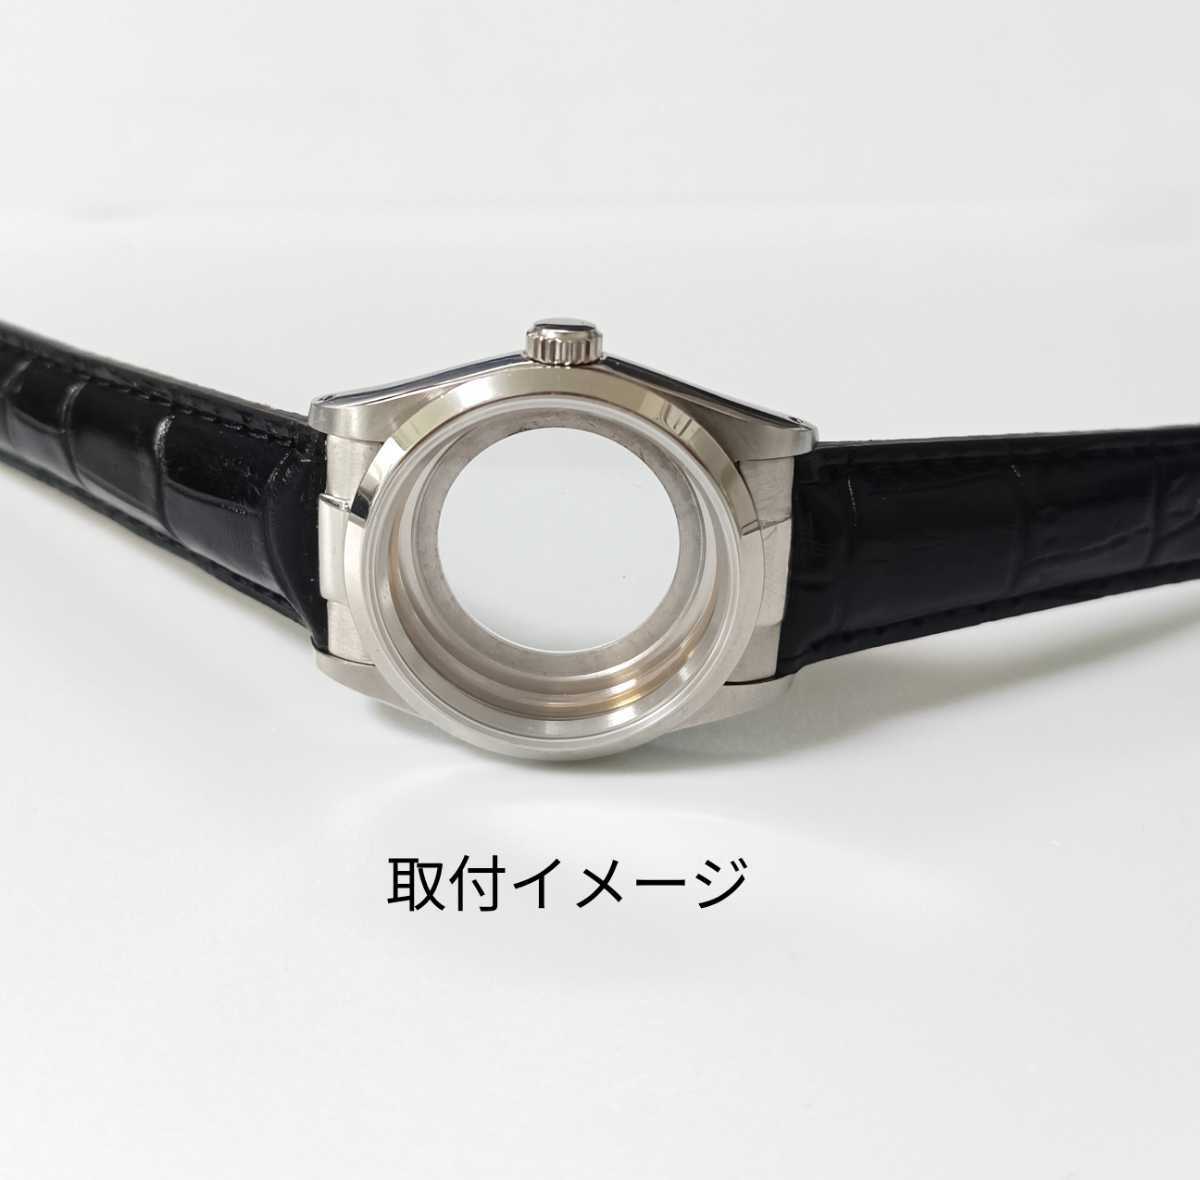 19mm наручные часы кожа ремень для неоригинальный товар flash Fit коврик × полировка центр глянец .. промежуток [ соответствует ]ROLEX Rolex устрица и т.п. 